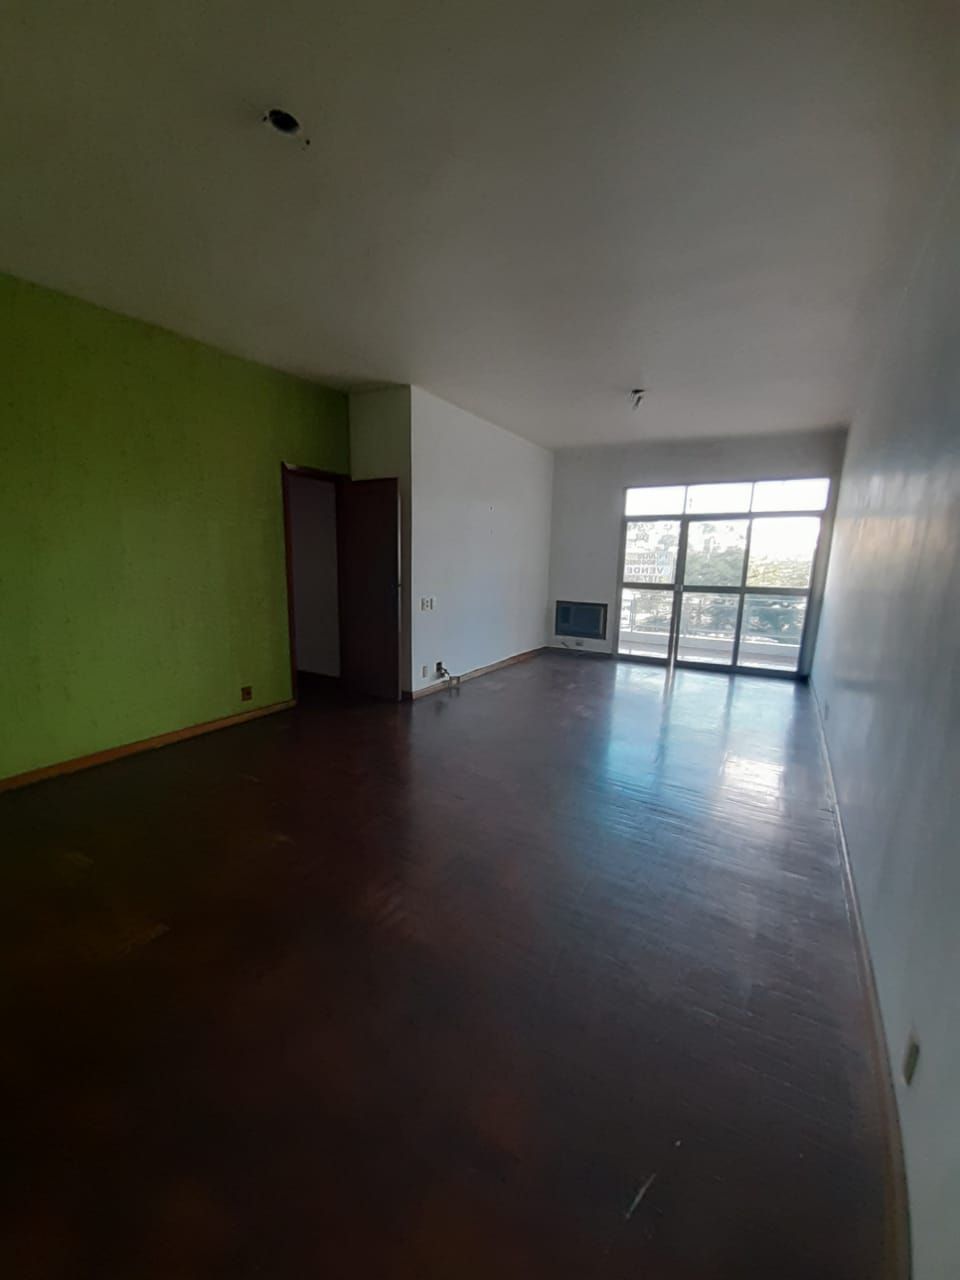 Apartamento à venda Praia de Cocotá,Rio de Janeiro,RJ - R$ 450.000 - 112 - 2